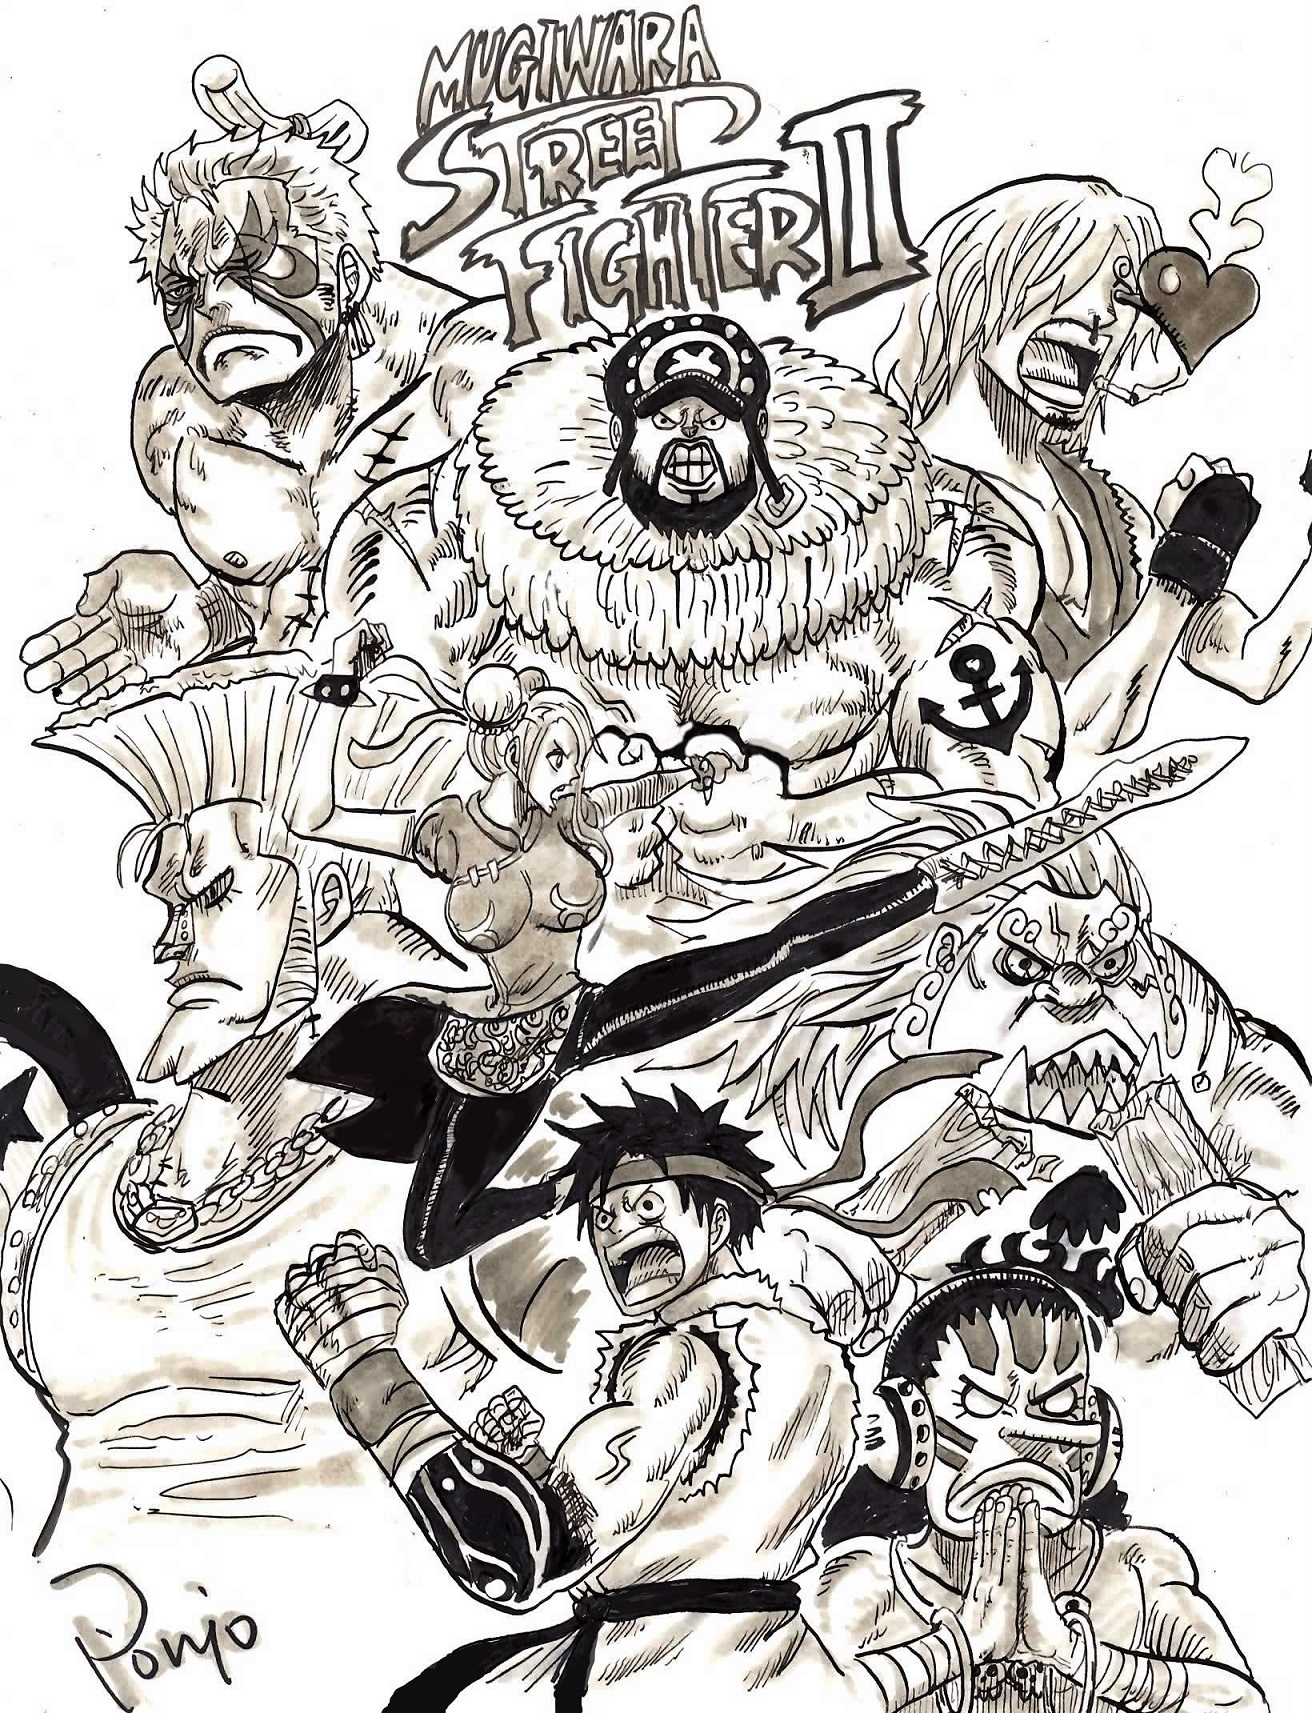 Personagens de One Piece se transformam em lutadores de Street Fighter nesse crossover incrível